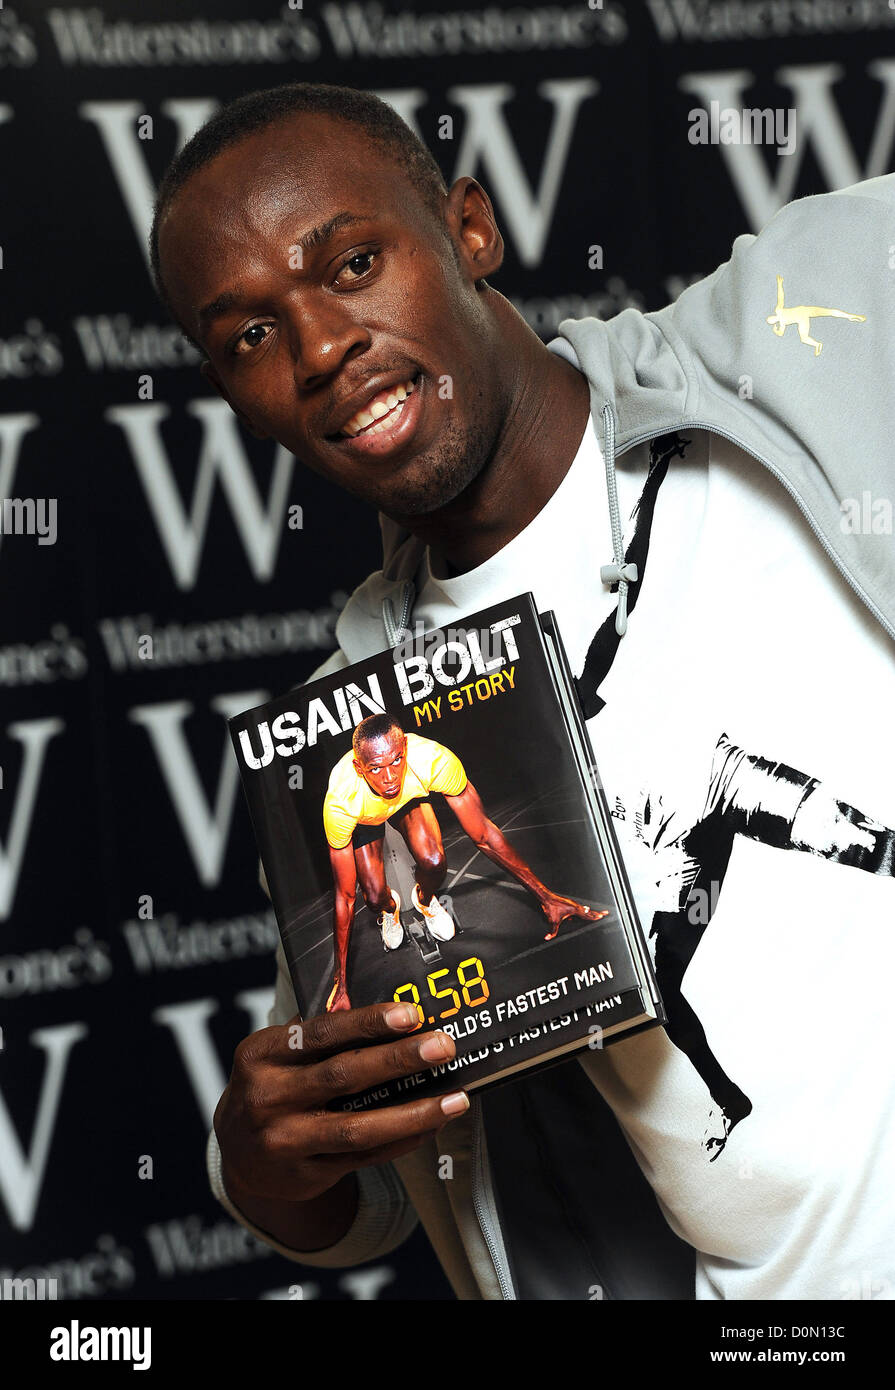 Usain Bolt segni le copie del suo libro "9,58" a Waterstone di Piccadilly, Londra Inghilterra - 02.09.10 Foto Stock